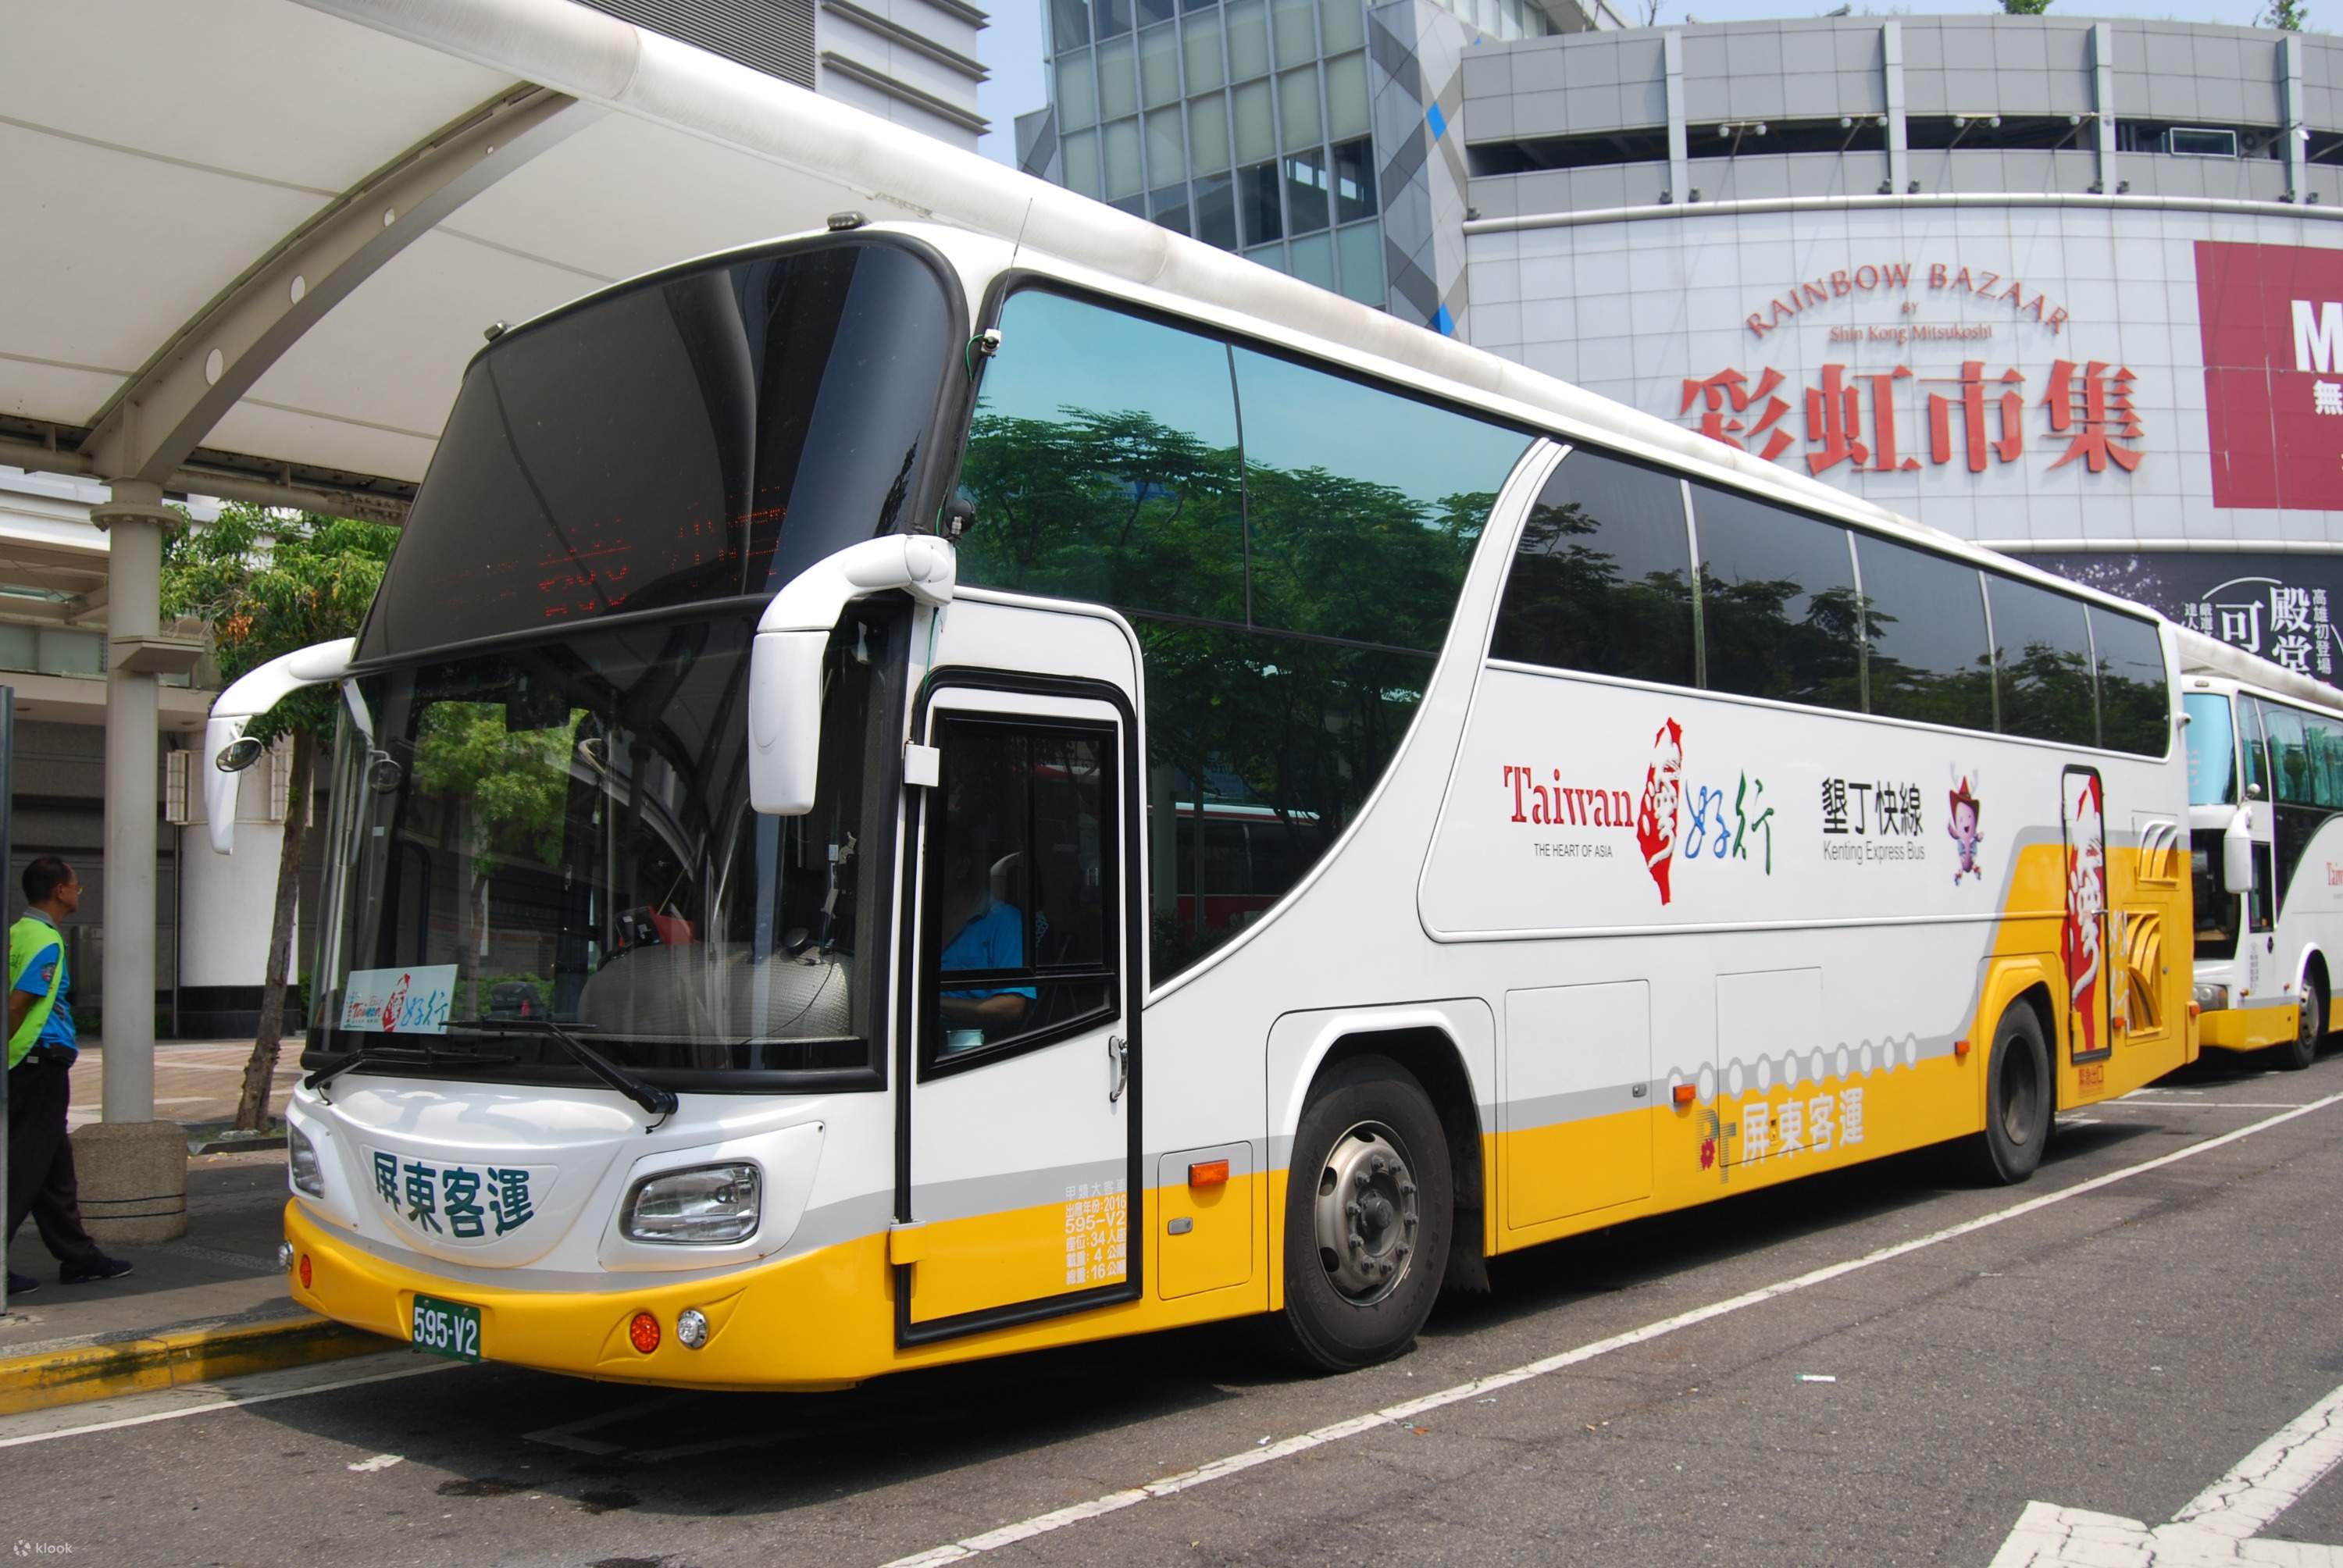 Kenting Bus Transfers - Klook